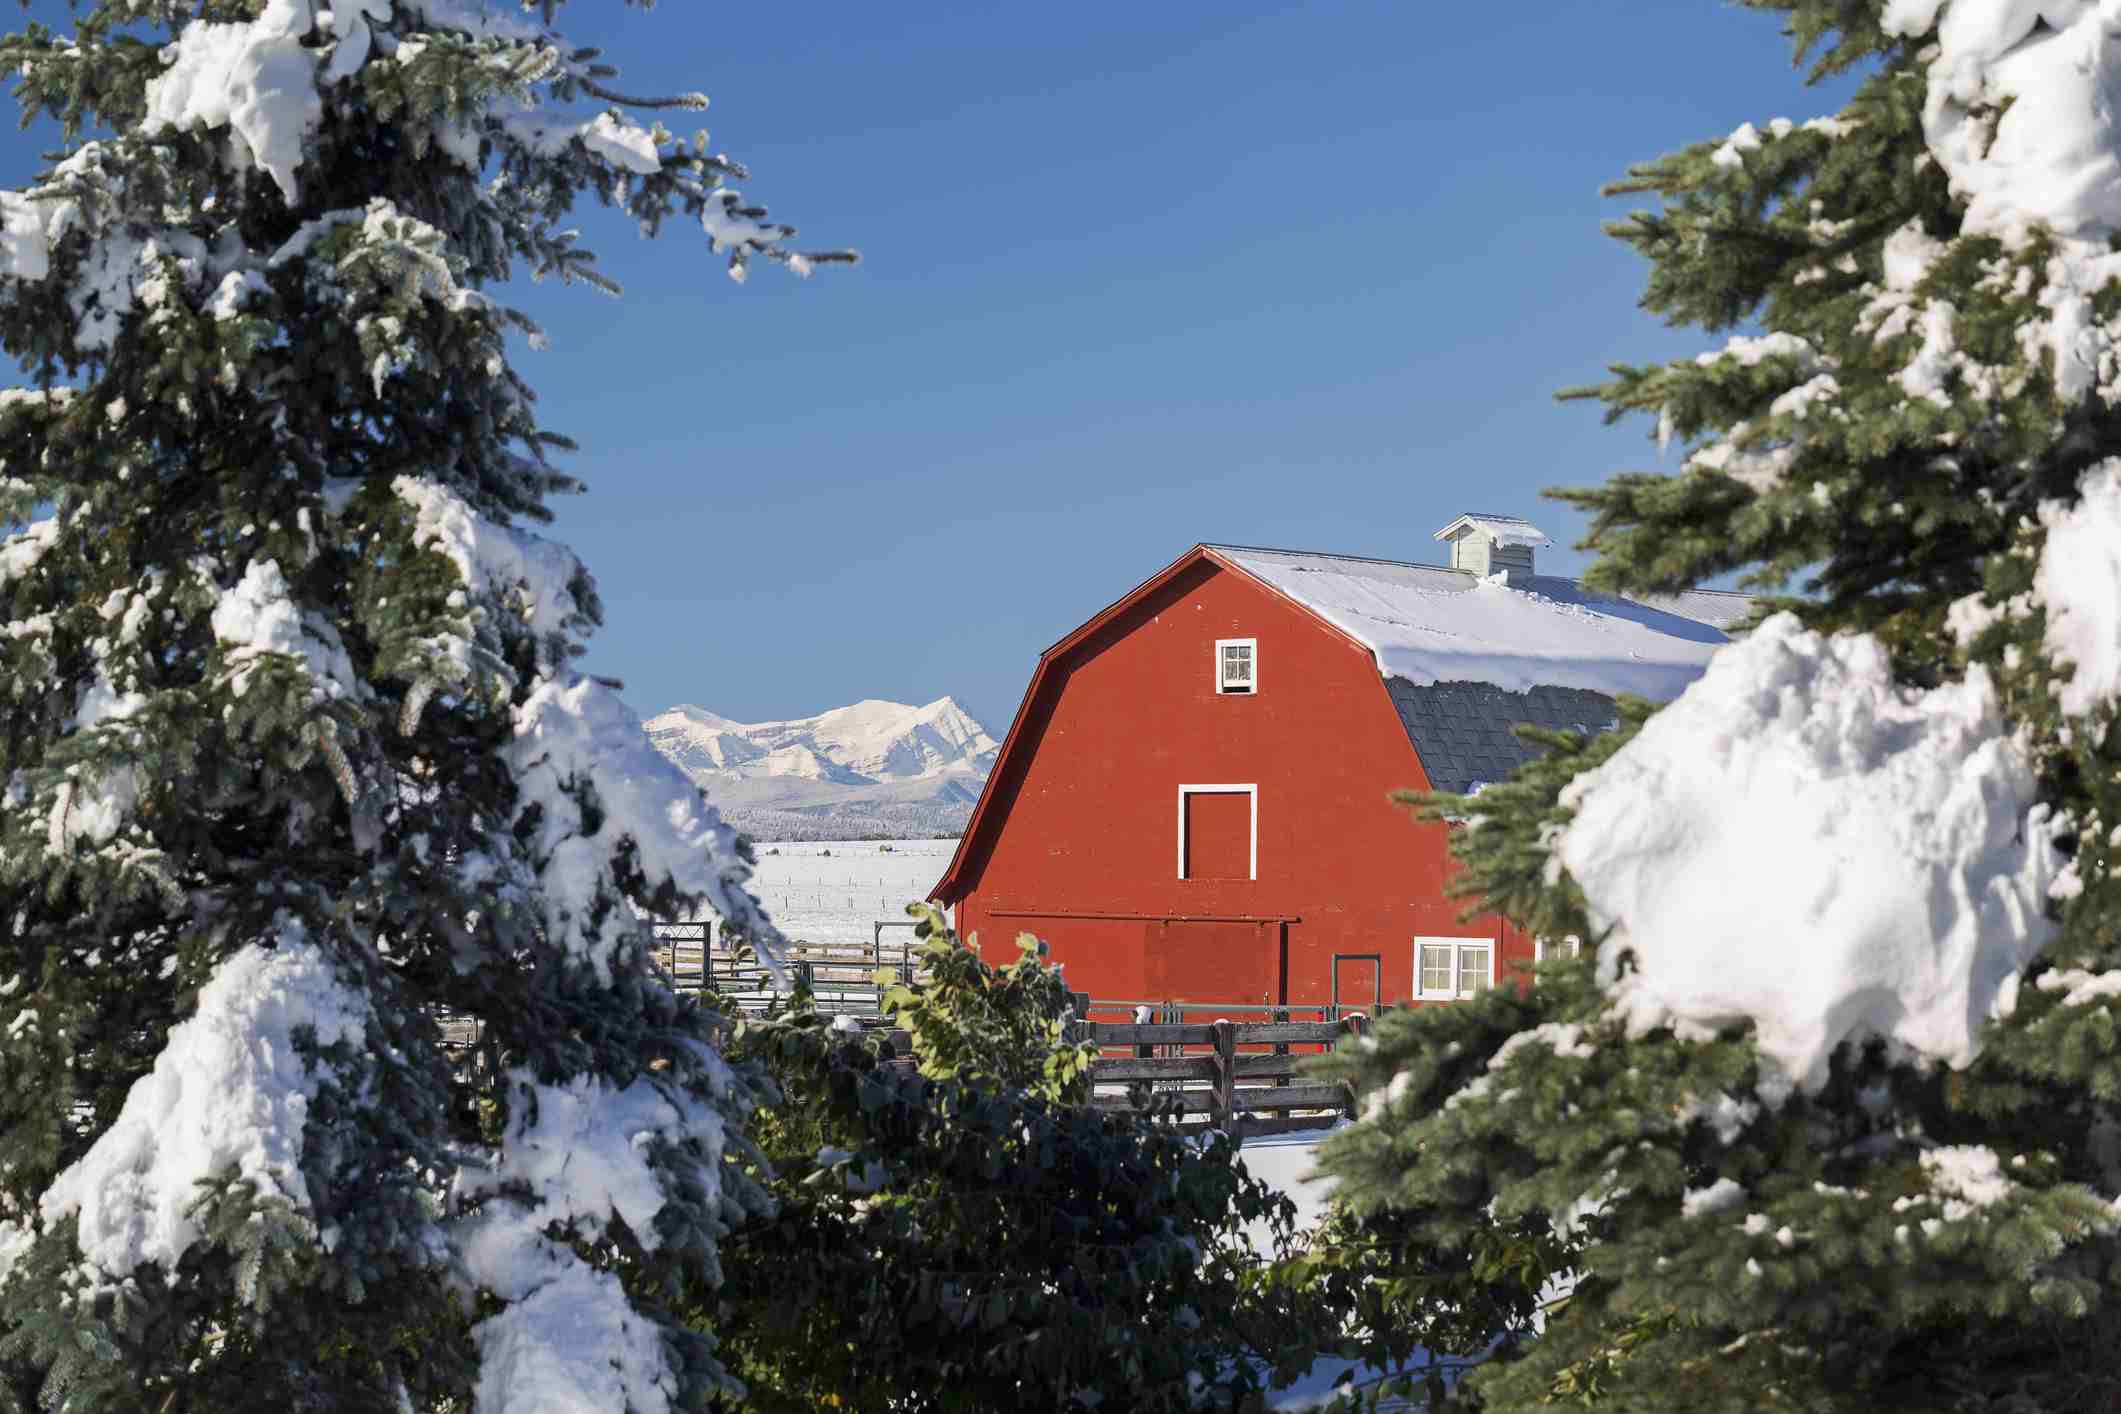 Zimní scéna s červenou stodolou, sněhem, vždyzelenými stromy a horami.